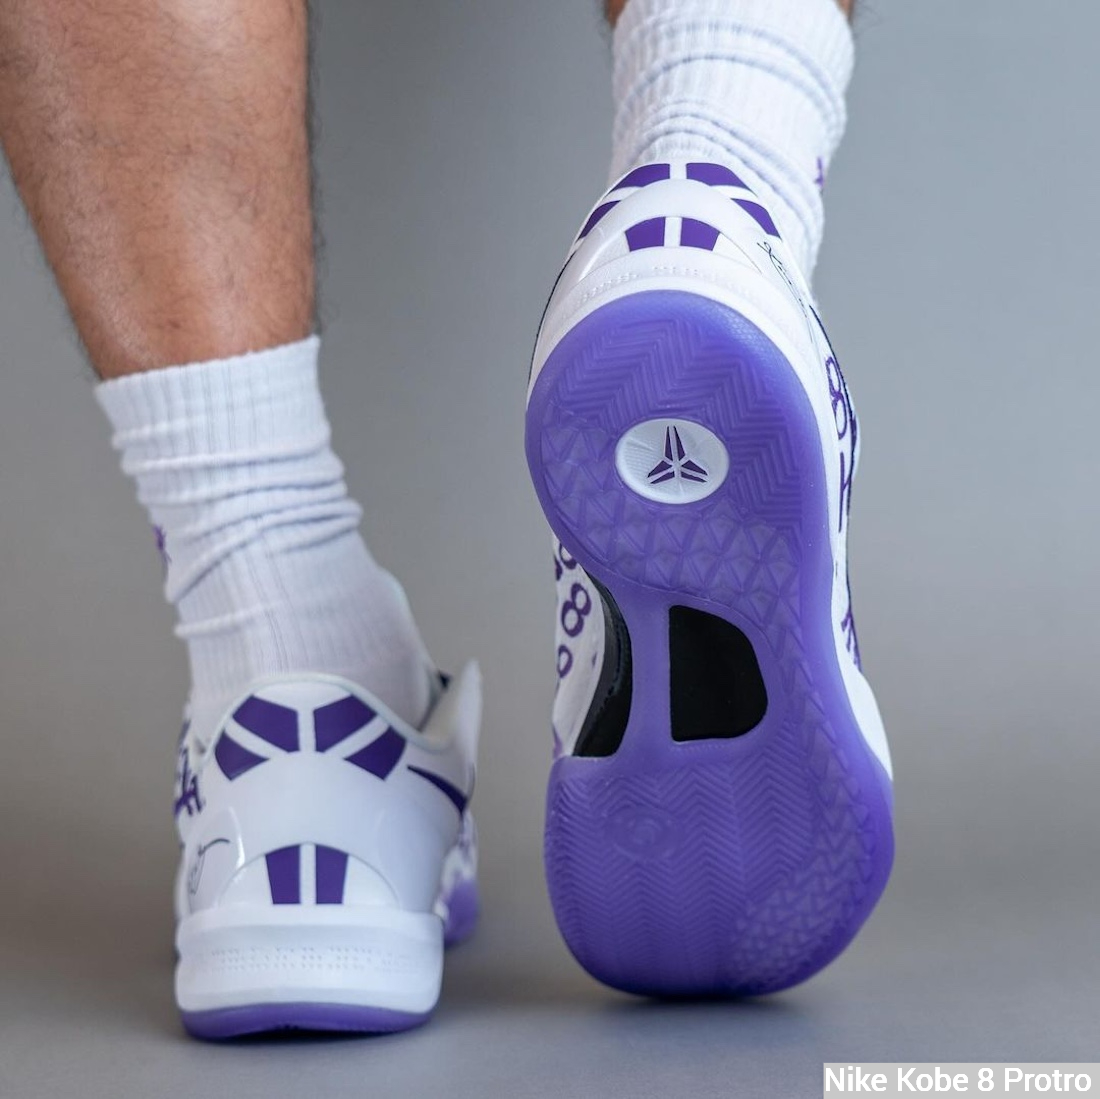 Nike Kobe 8 Protro White/Court Purple on feet - solo